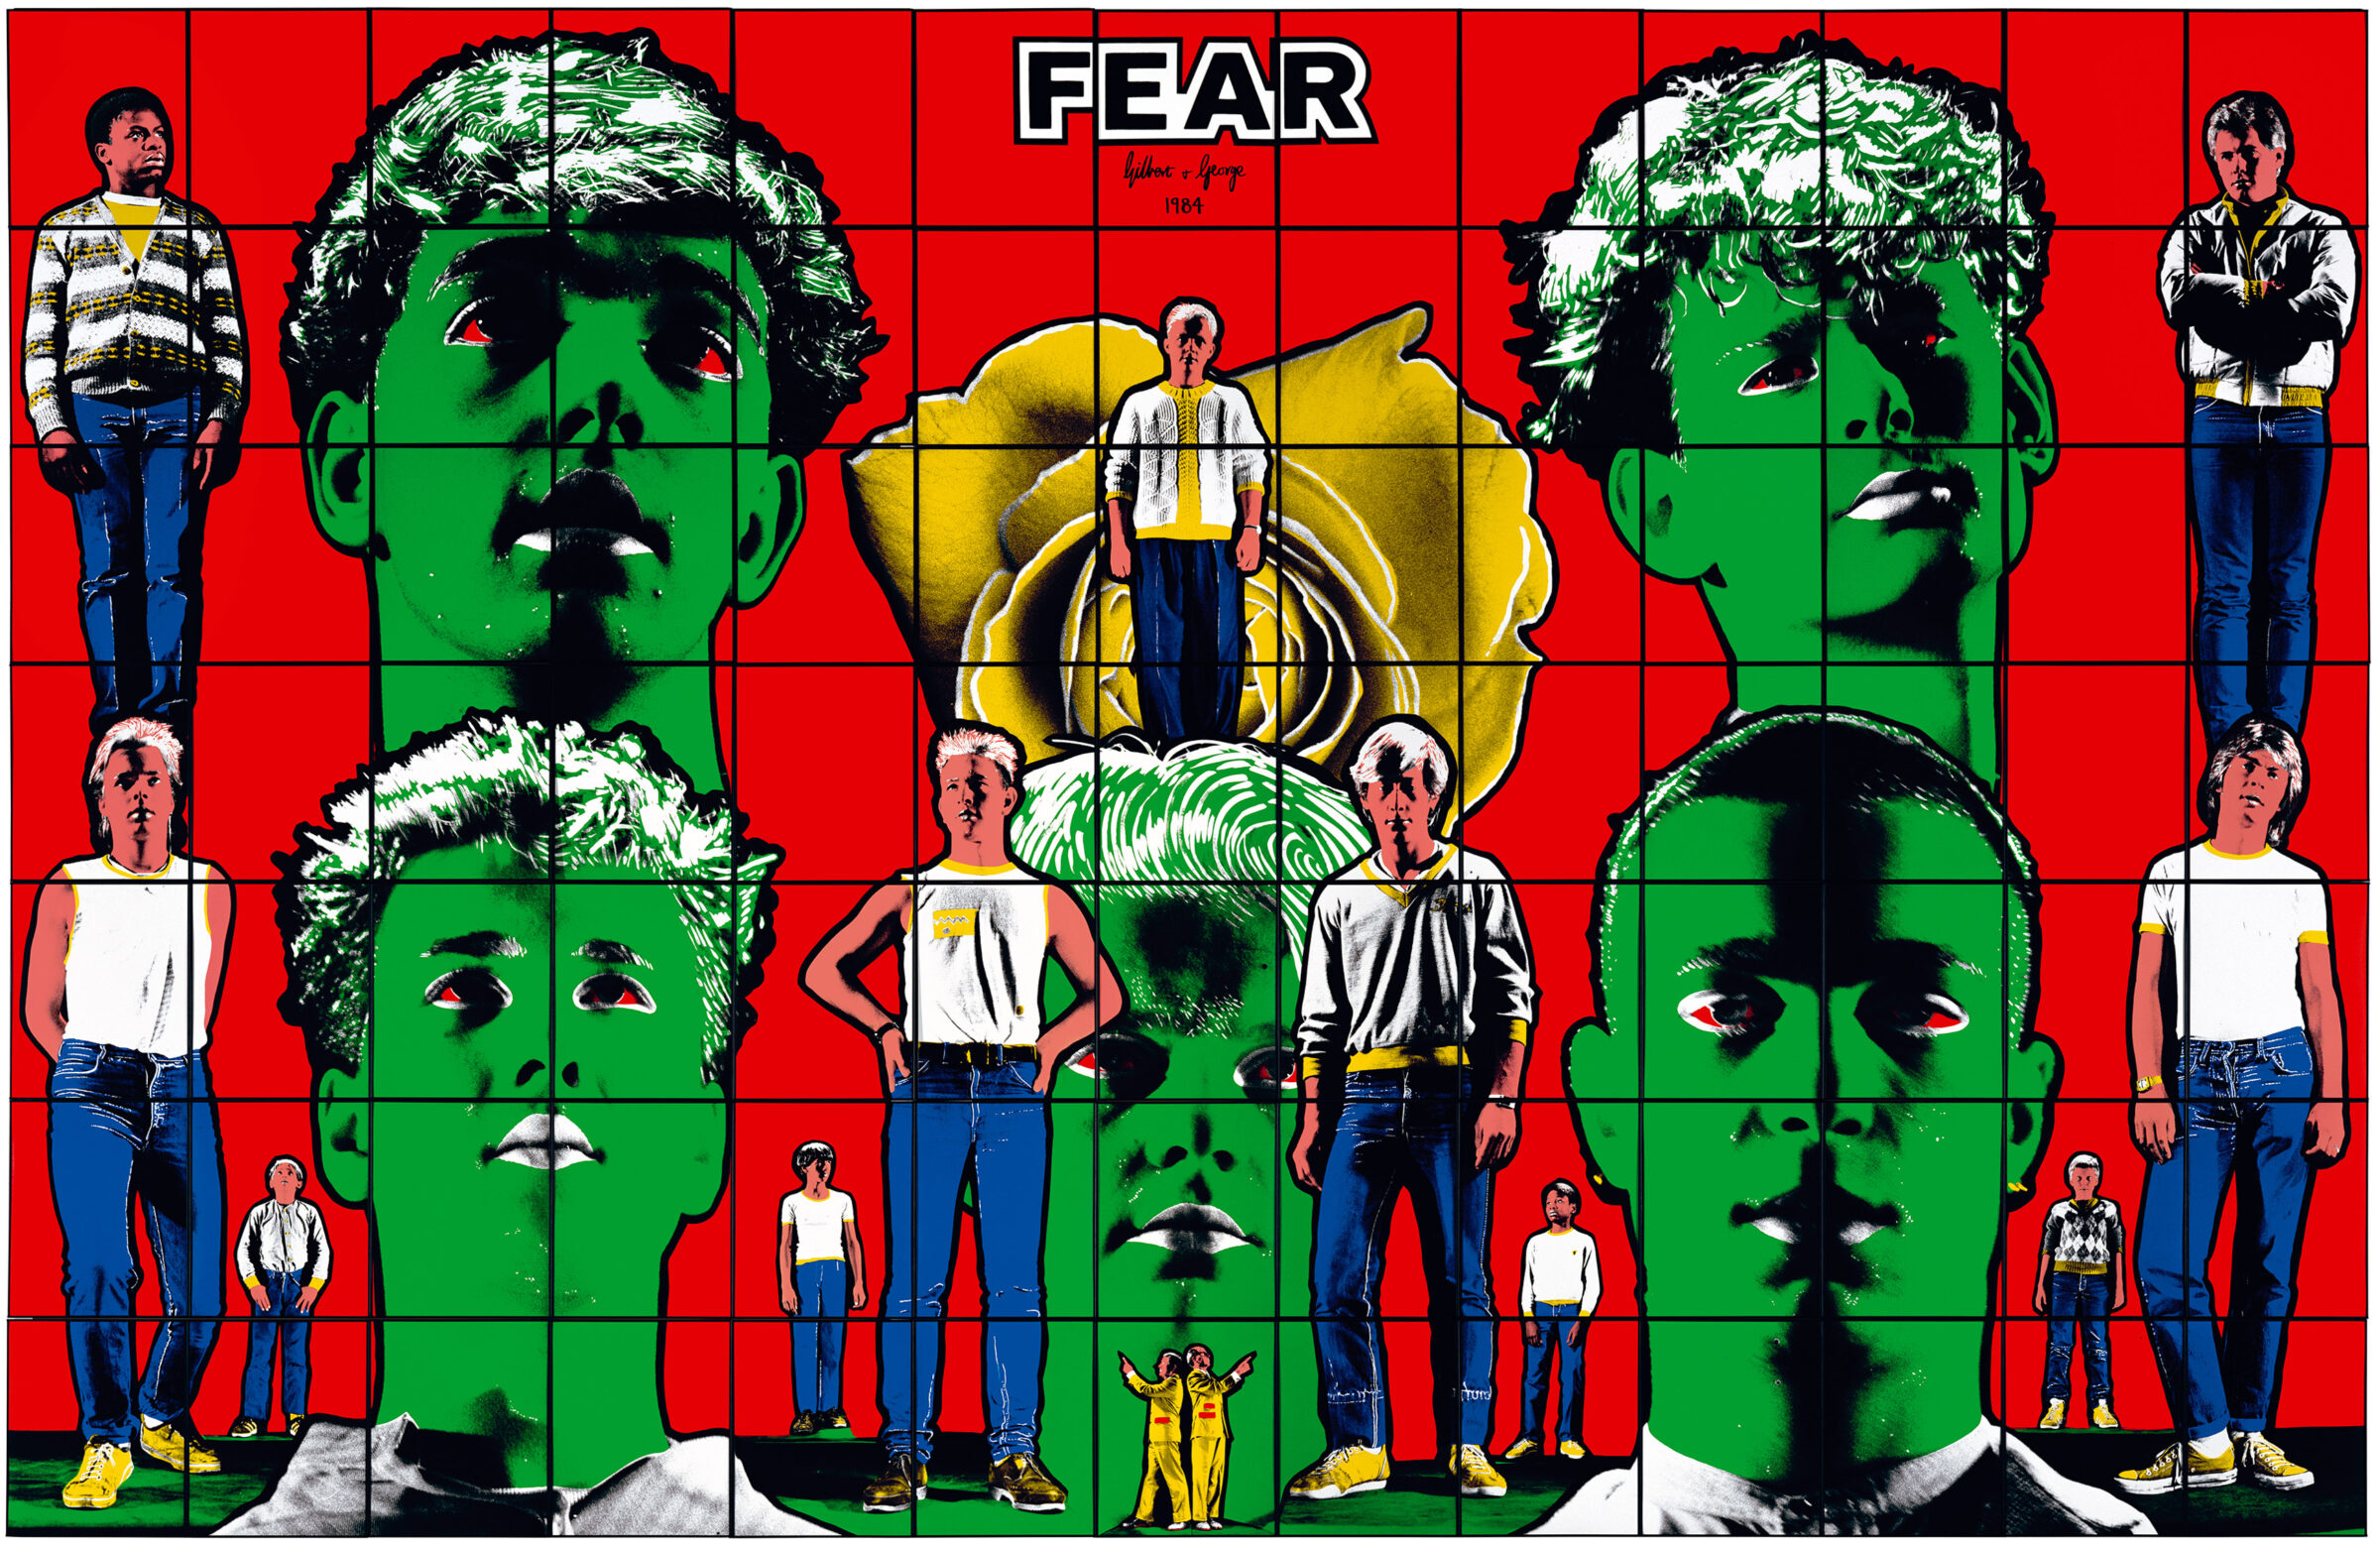 1984 DEATH HOPE LIFE FEAR panel4 FEAR